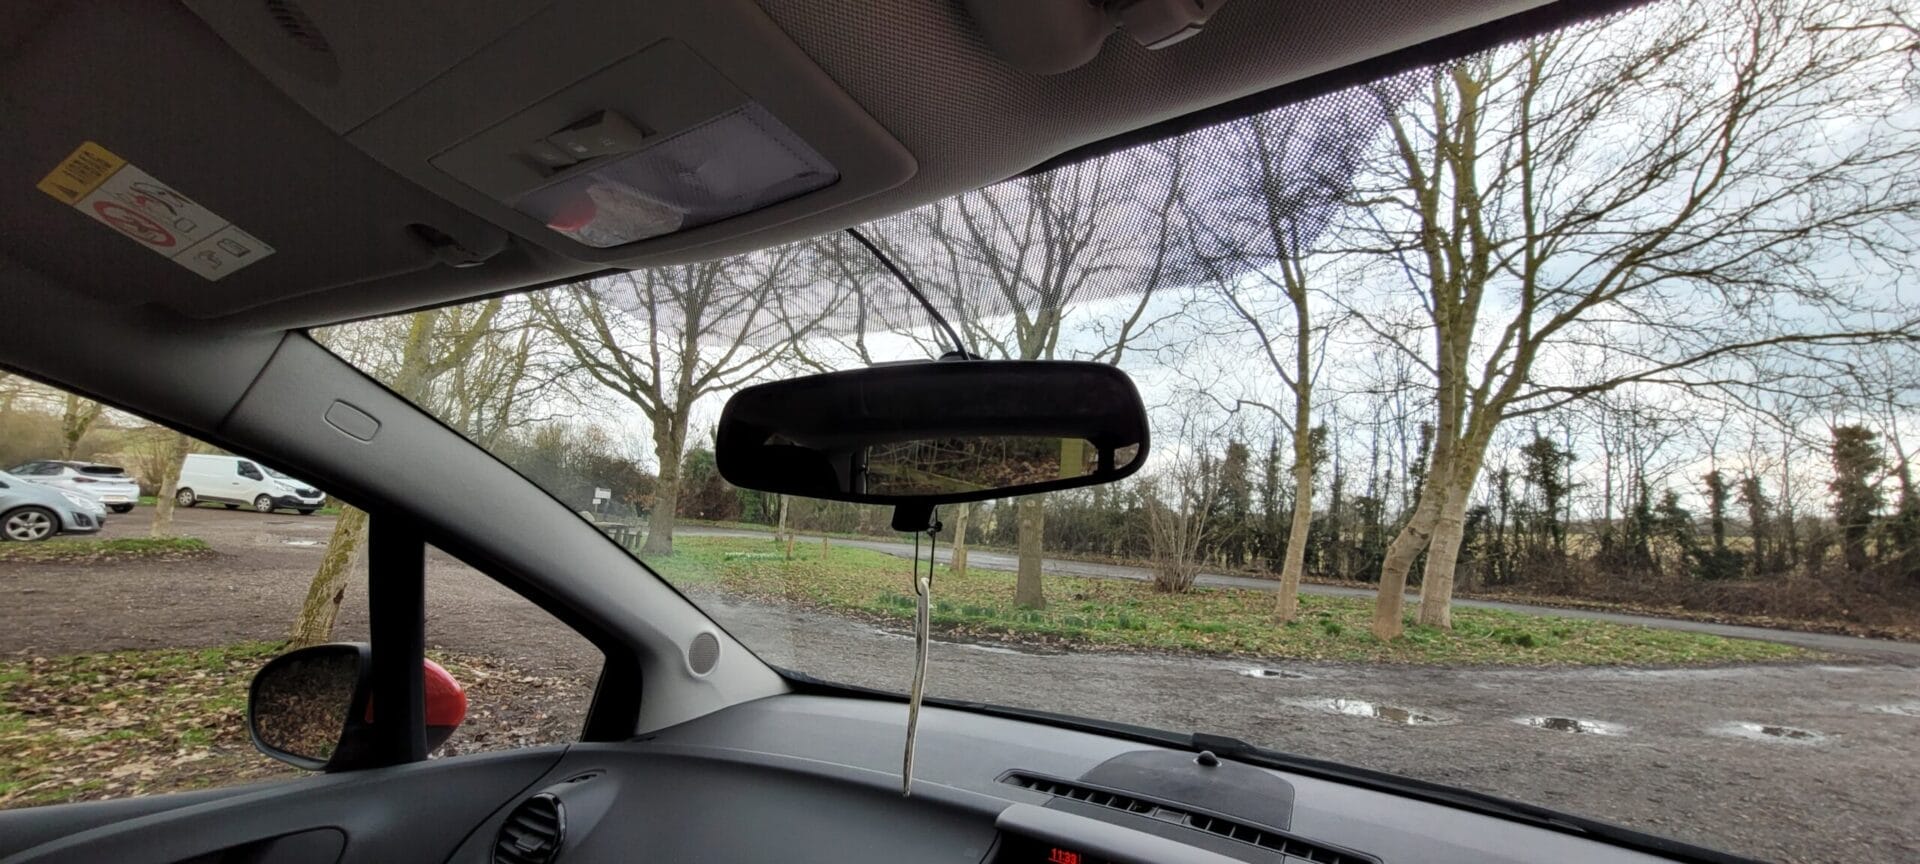 Image shows the hidden dashcam behind my mirror.